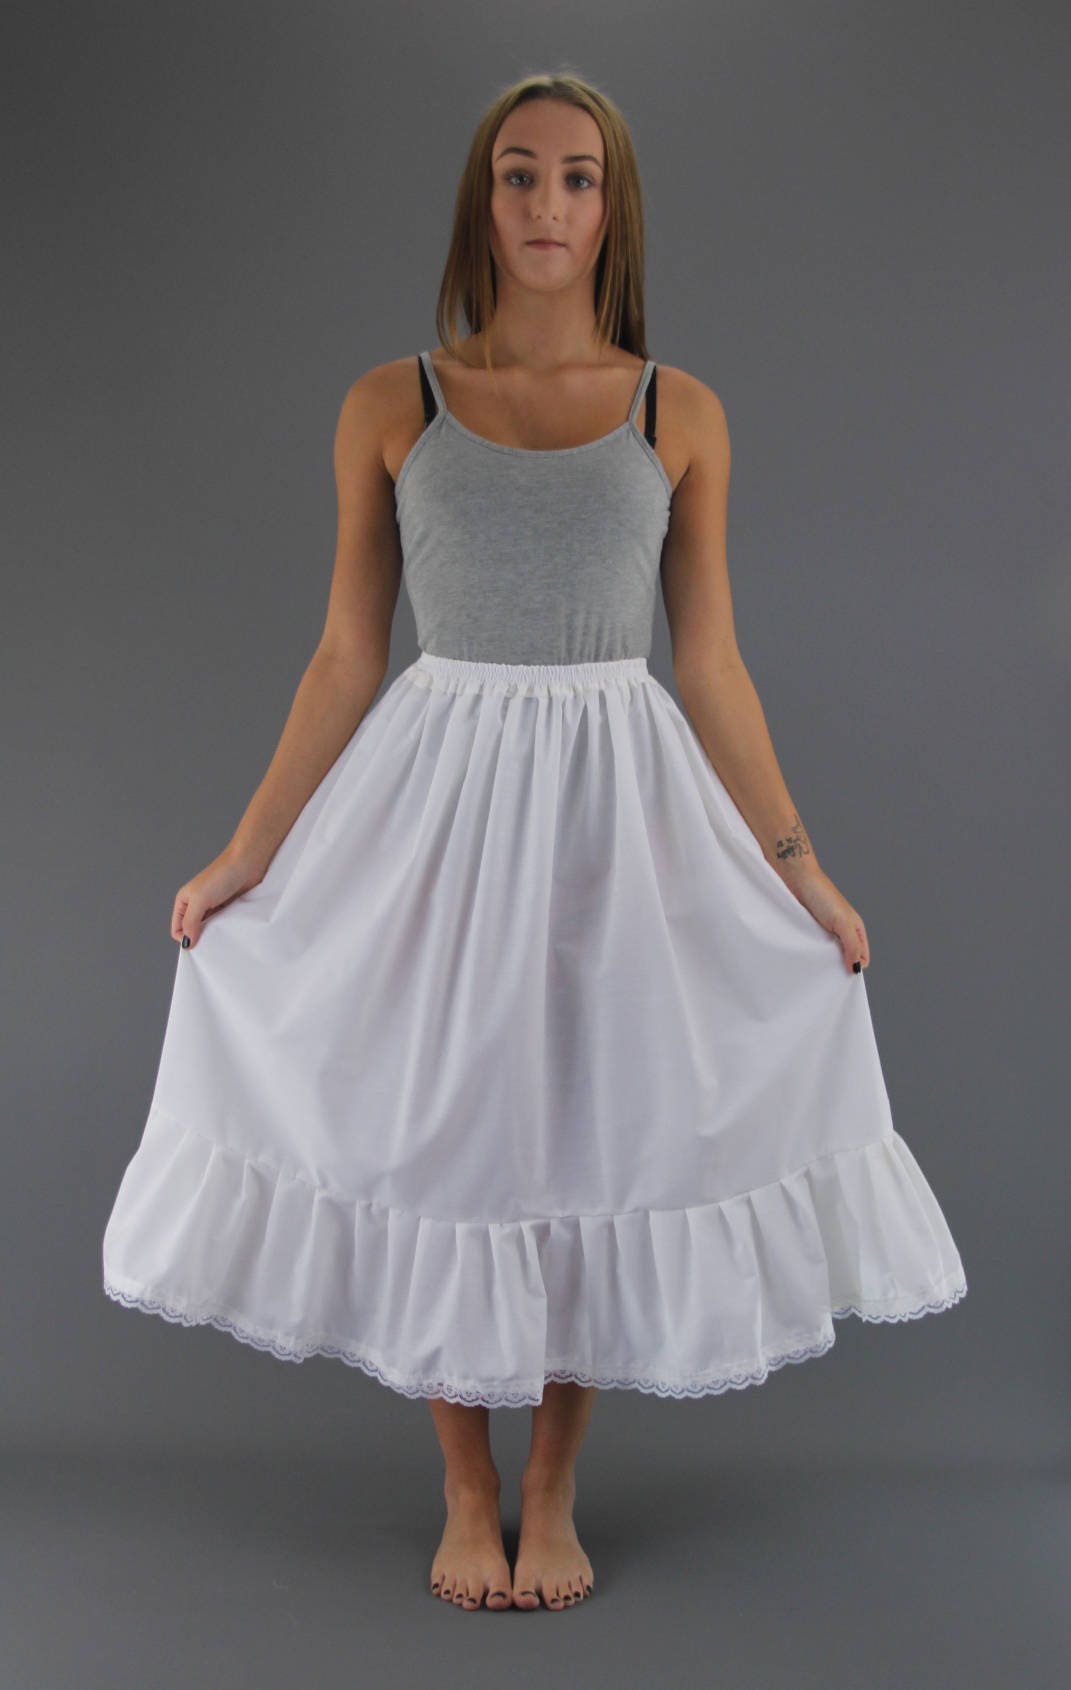 White Cotton Petticoat Plain Edged Lace Edged or Anglaise/eyelet